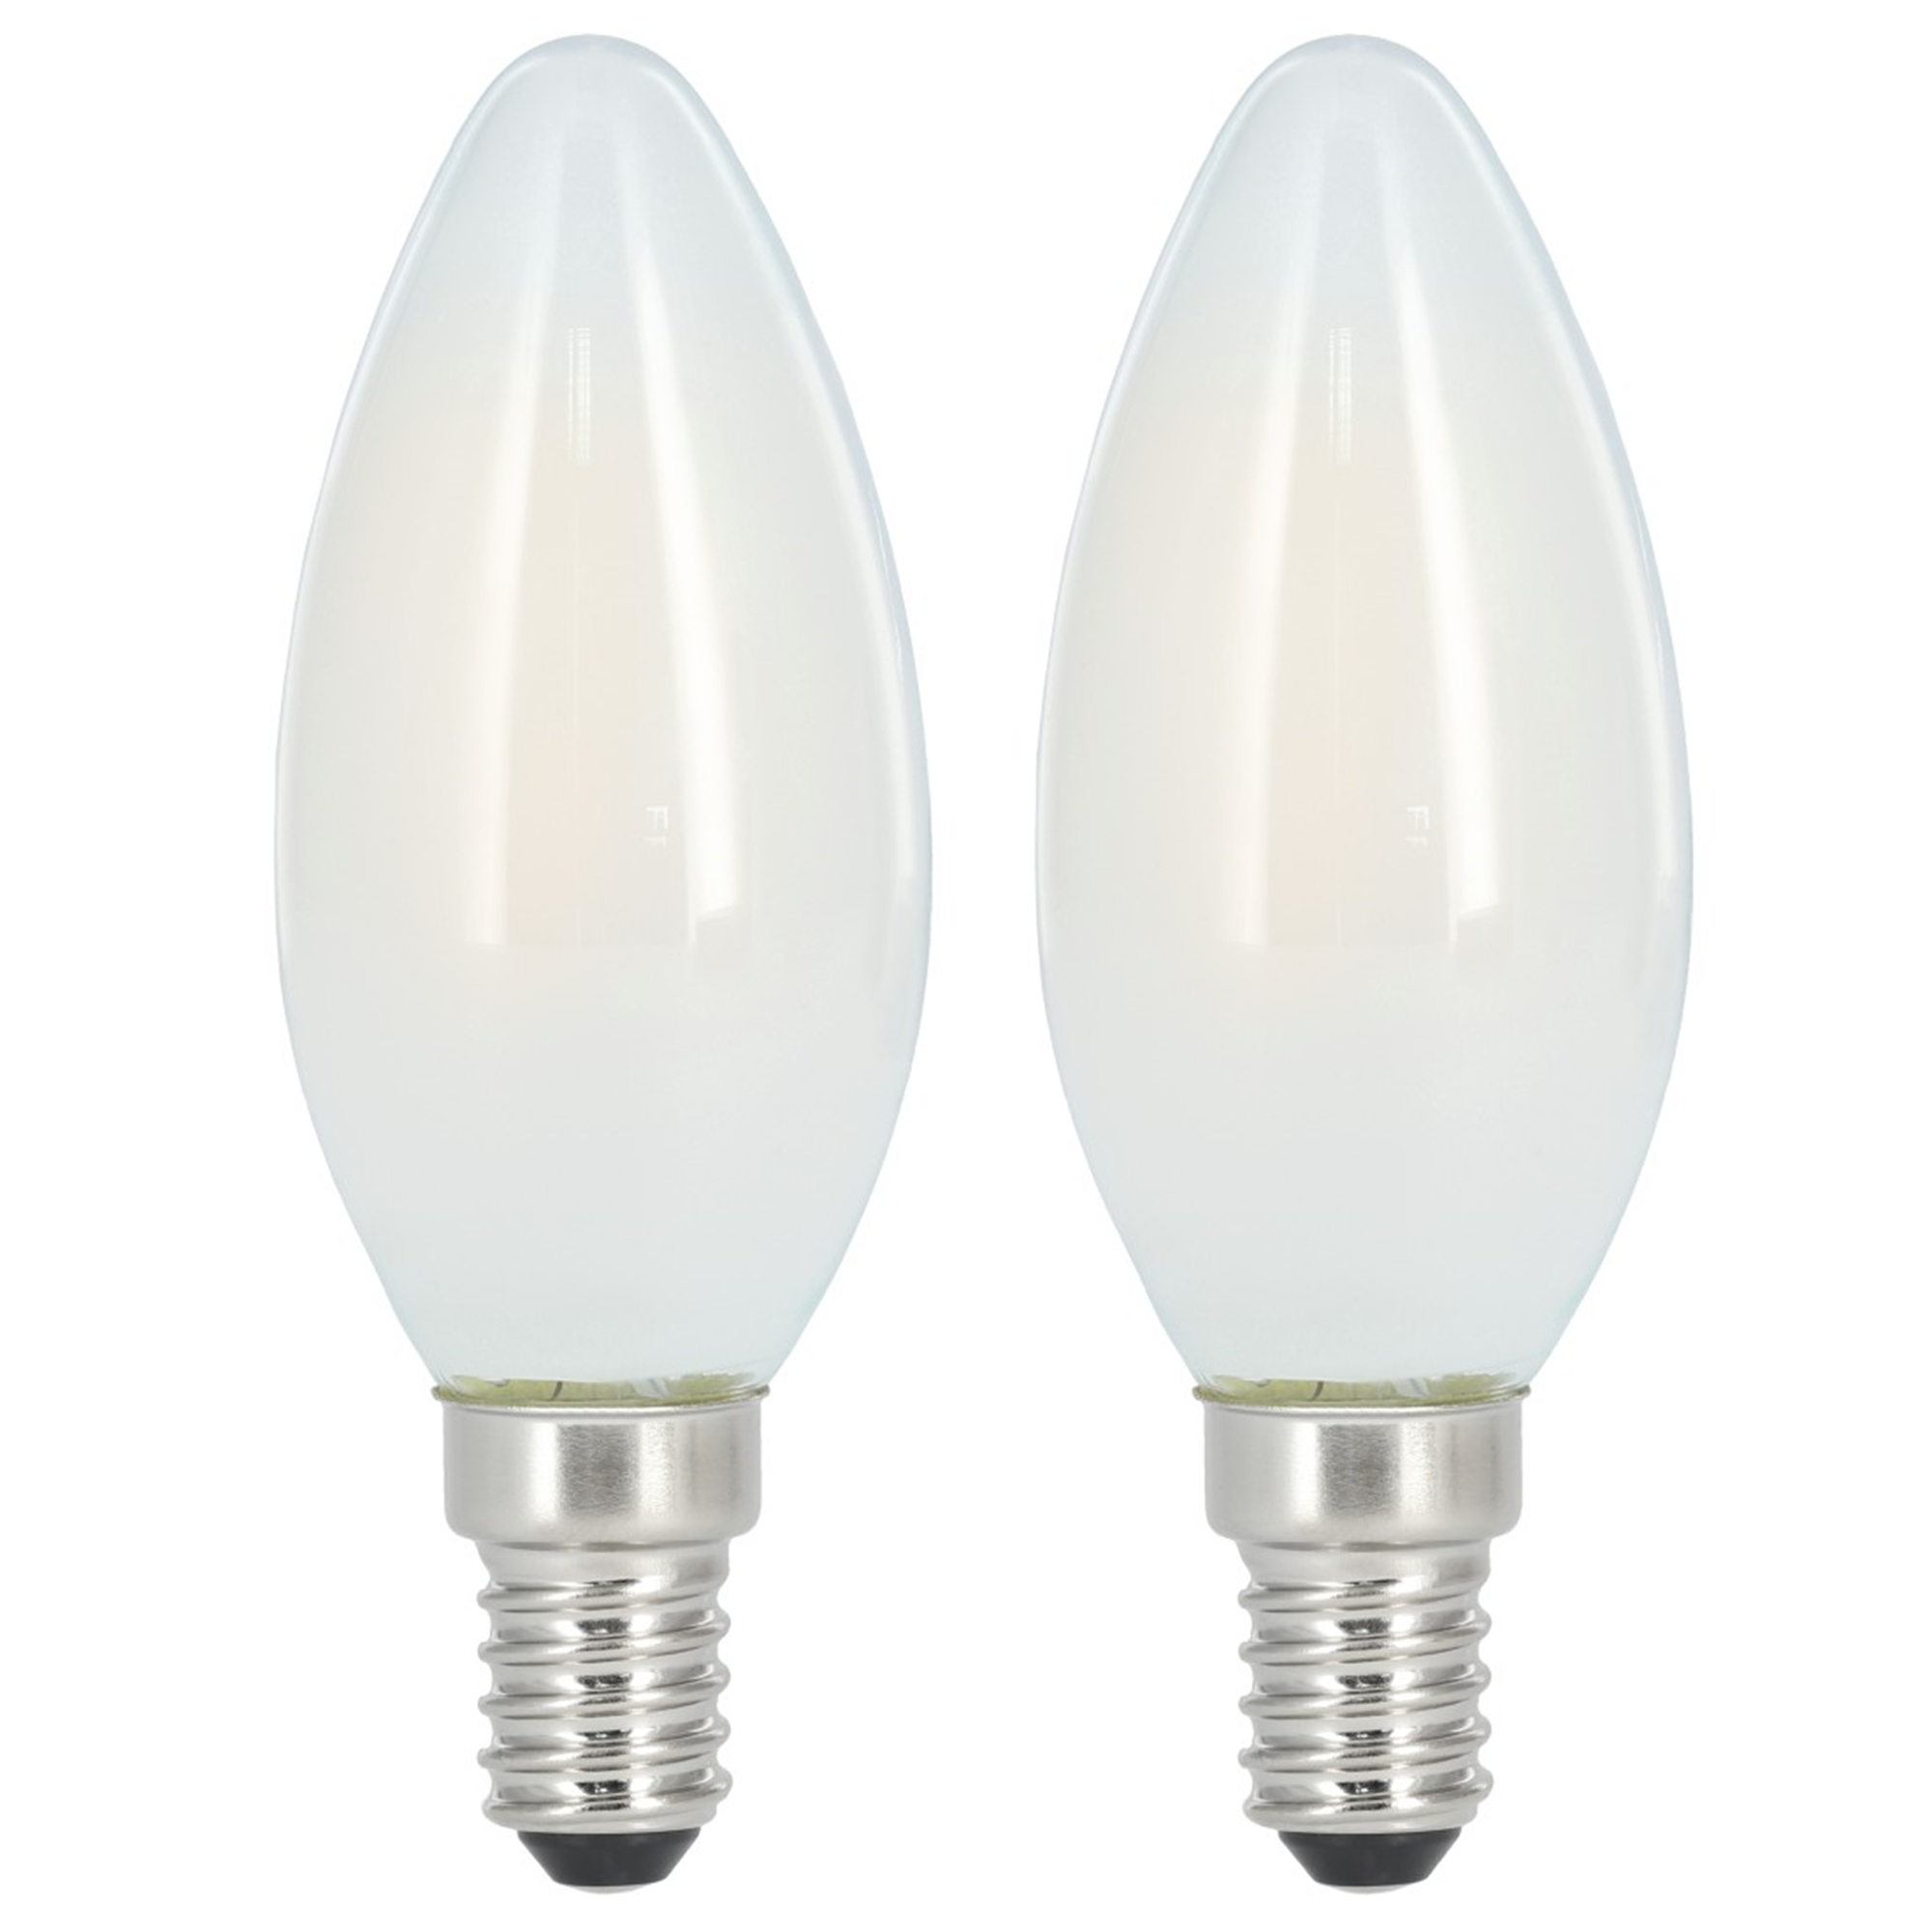 XAVAX 470lm Warmweiß E14 ersetzt 40W LED-Lampe E14,